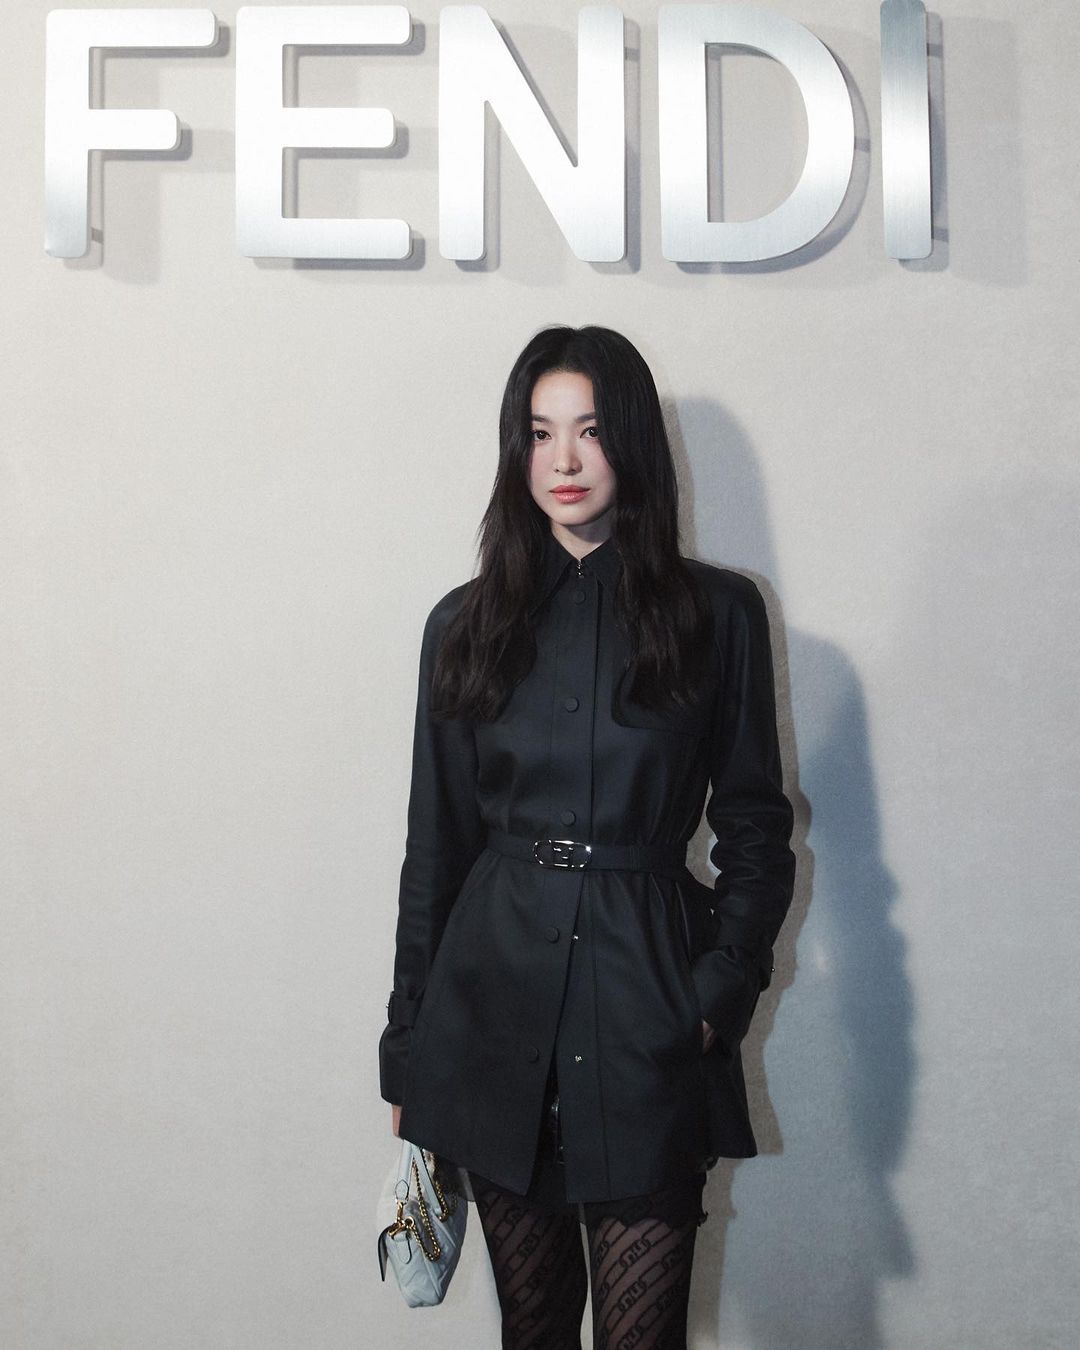 7749 outfit đẳng cấp chứng minh Song Hye Kyo là đại sứ hoàn hảo của Fendi - Ảnh 2.